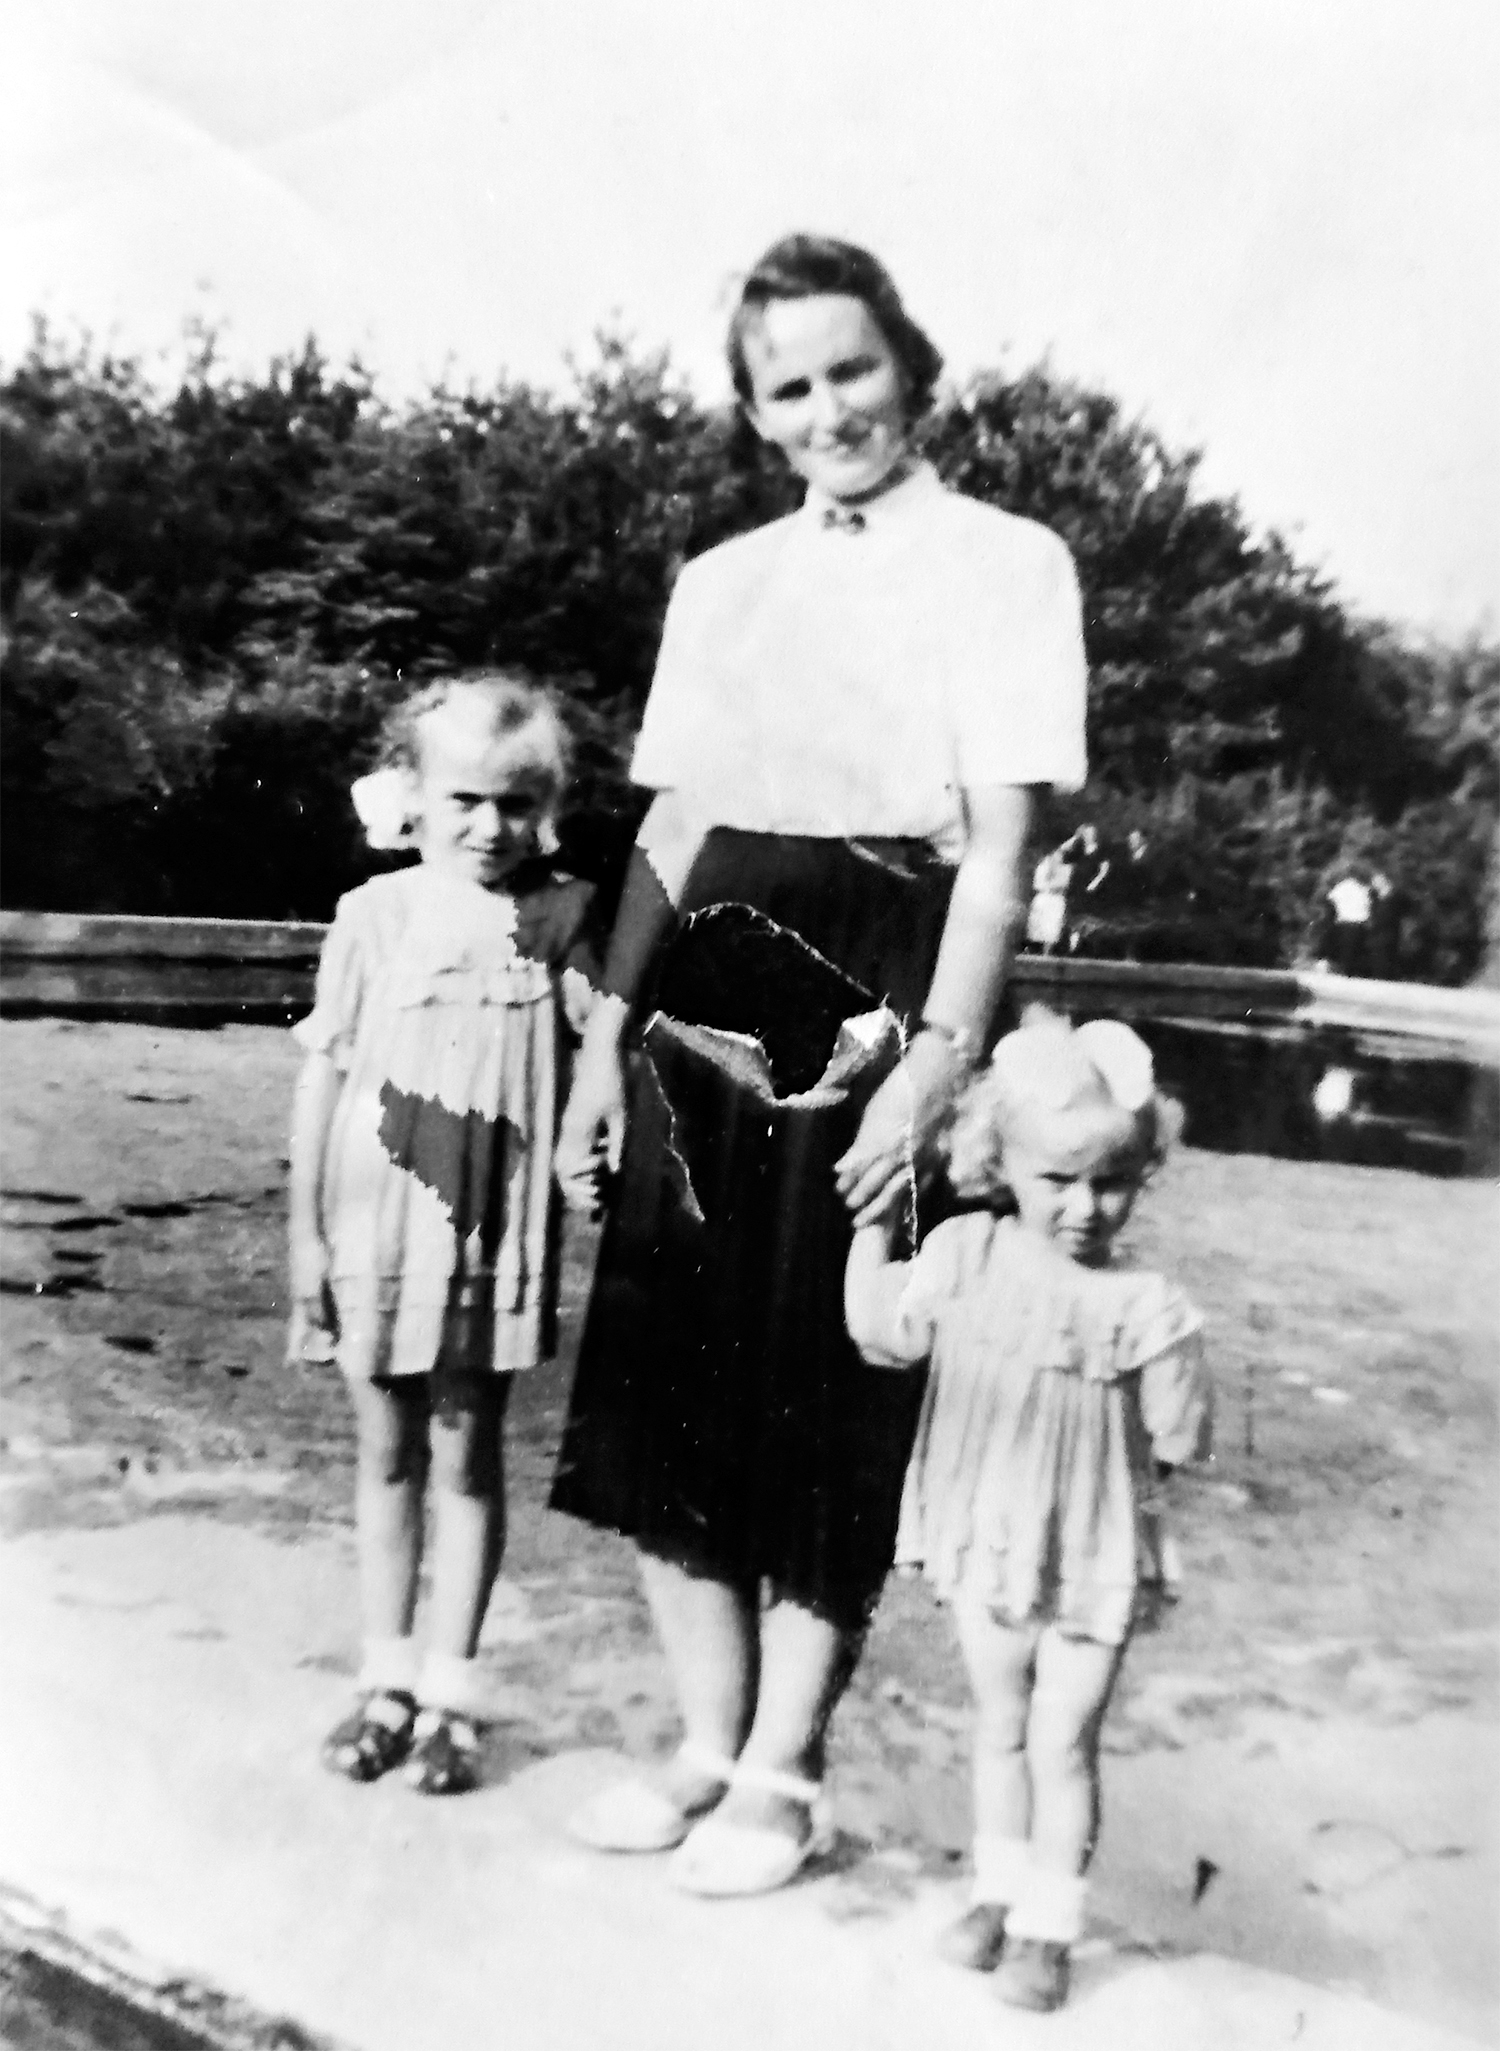 Siostry Grażynka i Marysia Krawczykówny z mamą Janiną na terenie basenu miejskiego w Warcie